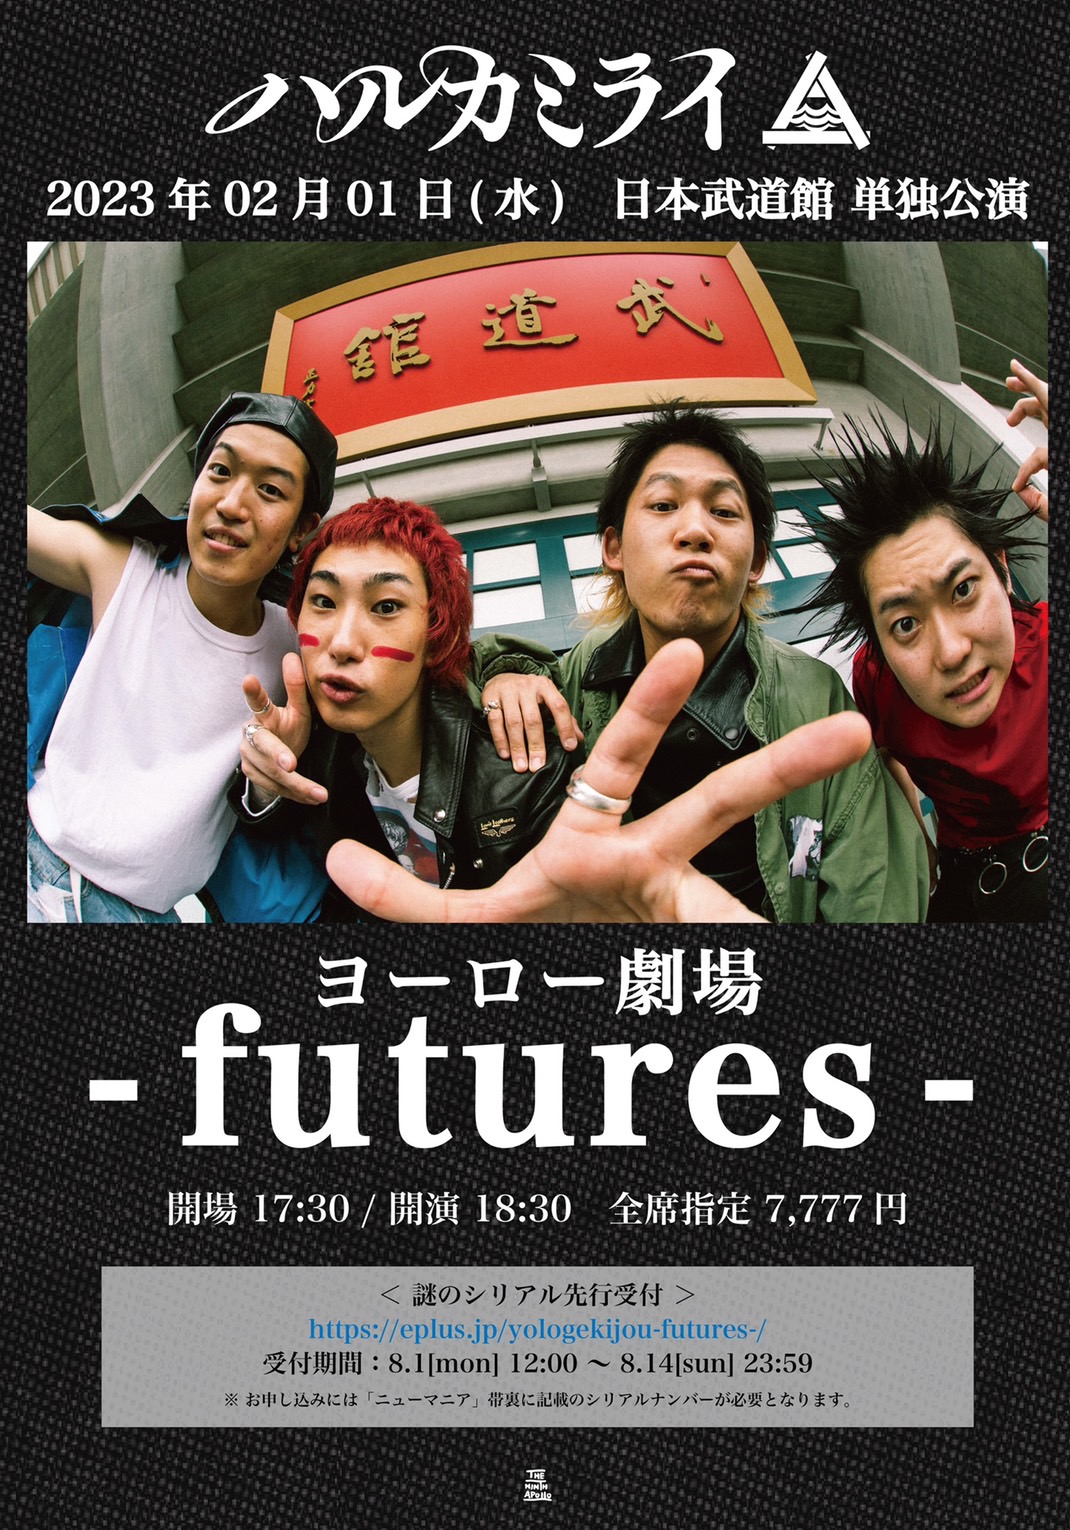 ハルカミライ、初の日本武道館単独公演【ヨーロー劇場 - futures -】を 